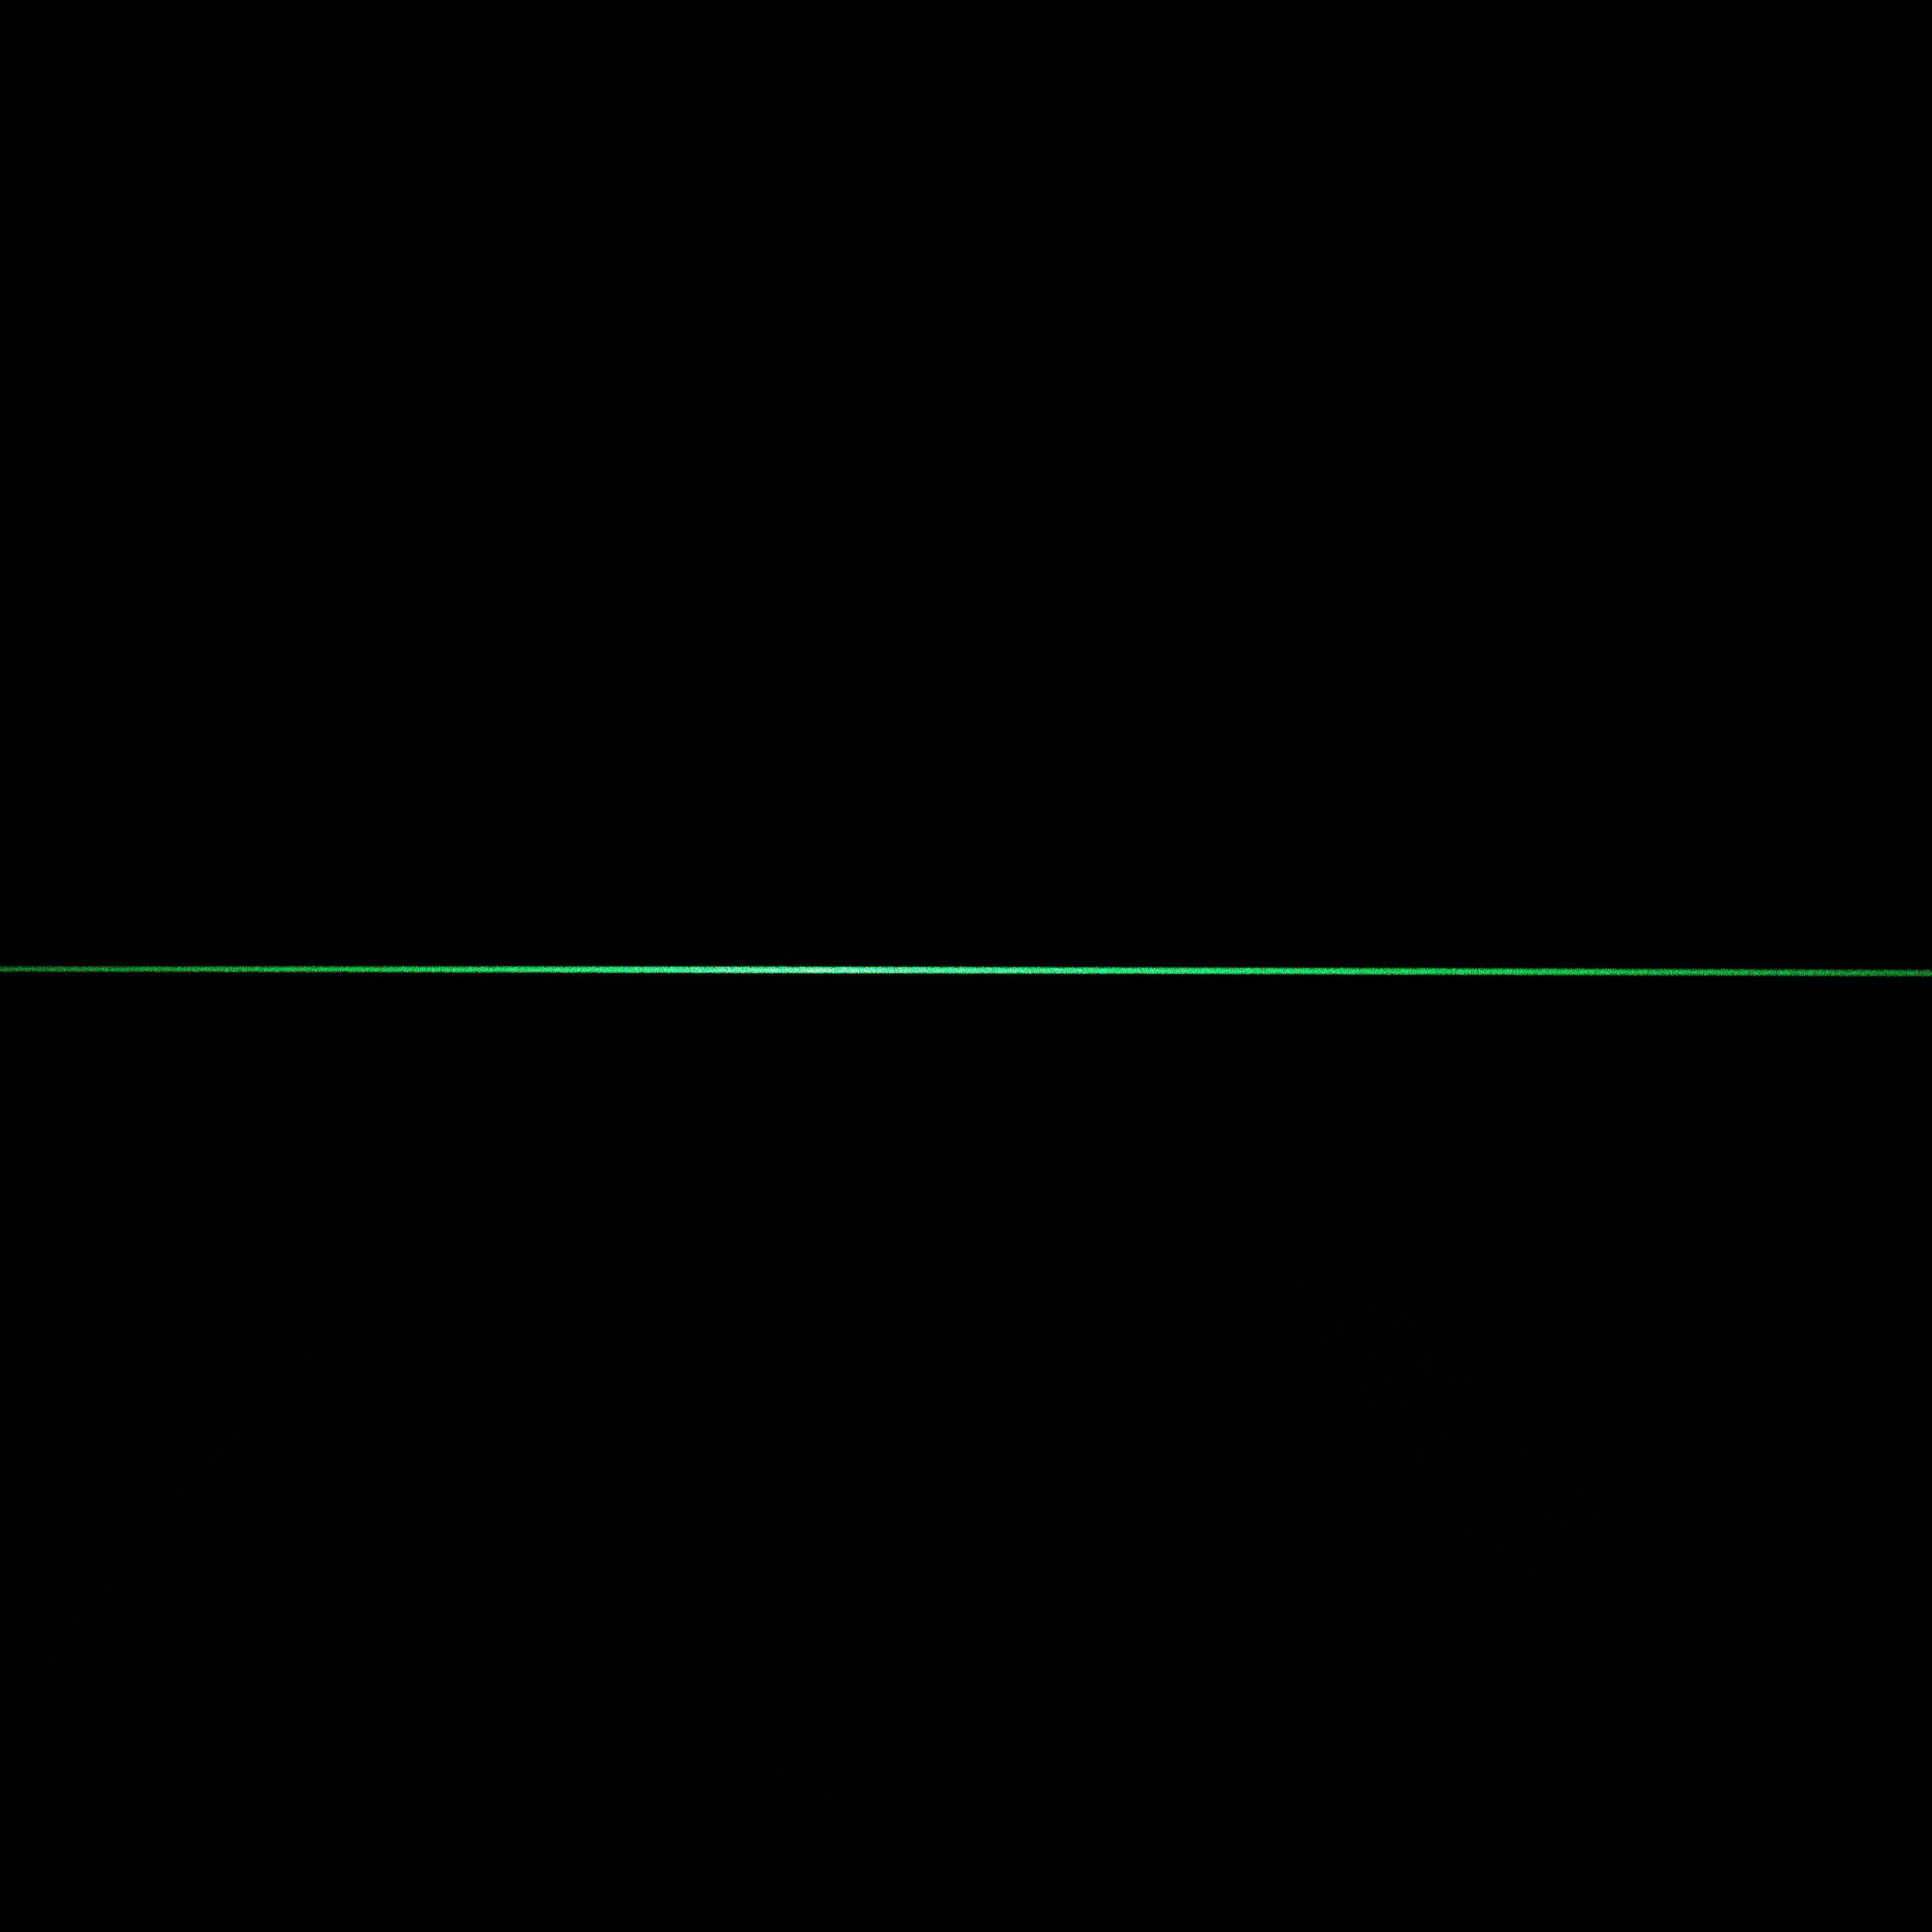 Linienlaser, grün, 520 nm, 90 °, 5 mW, Ø19x86 mm, Laserklasse 1, Fokus fixed (1000mm)